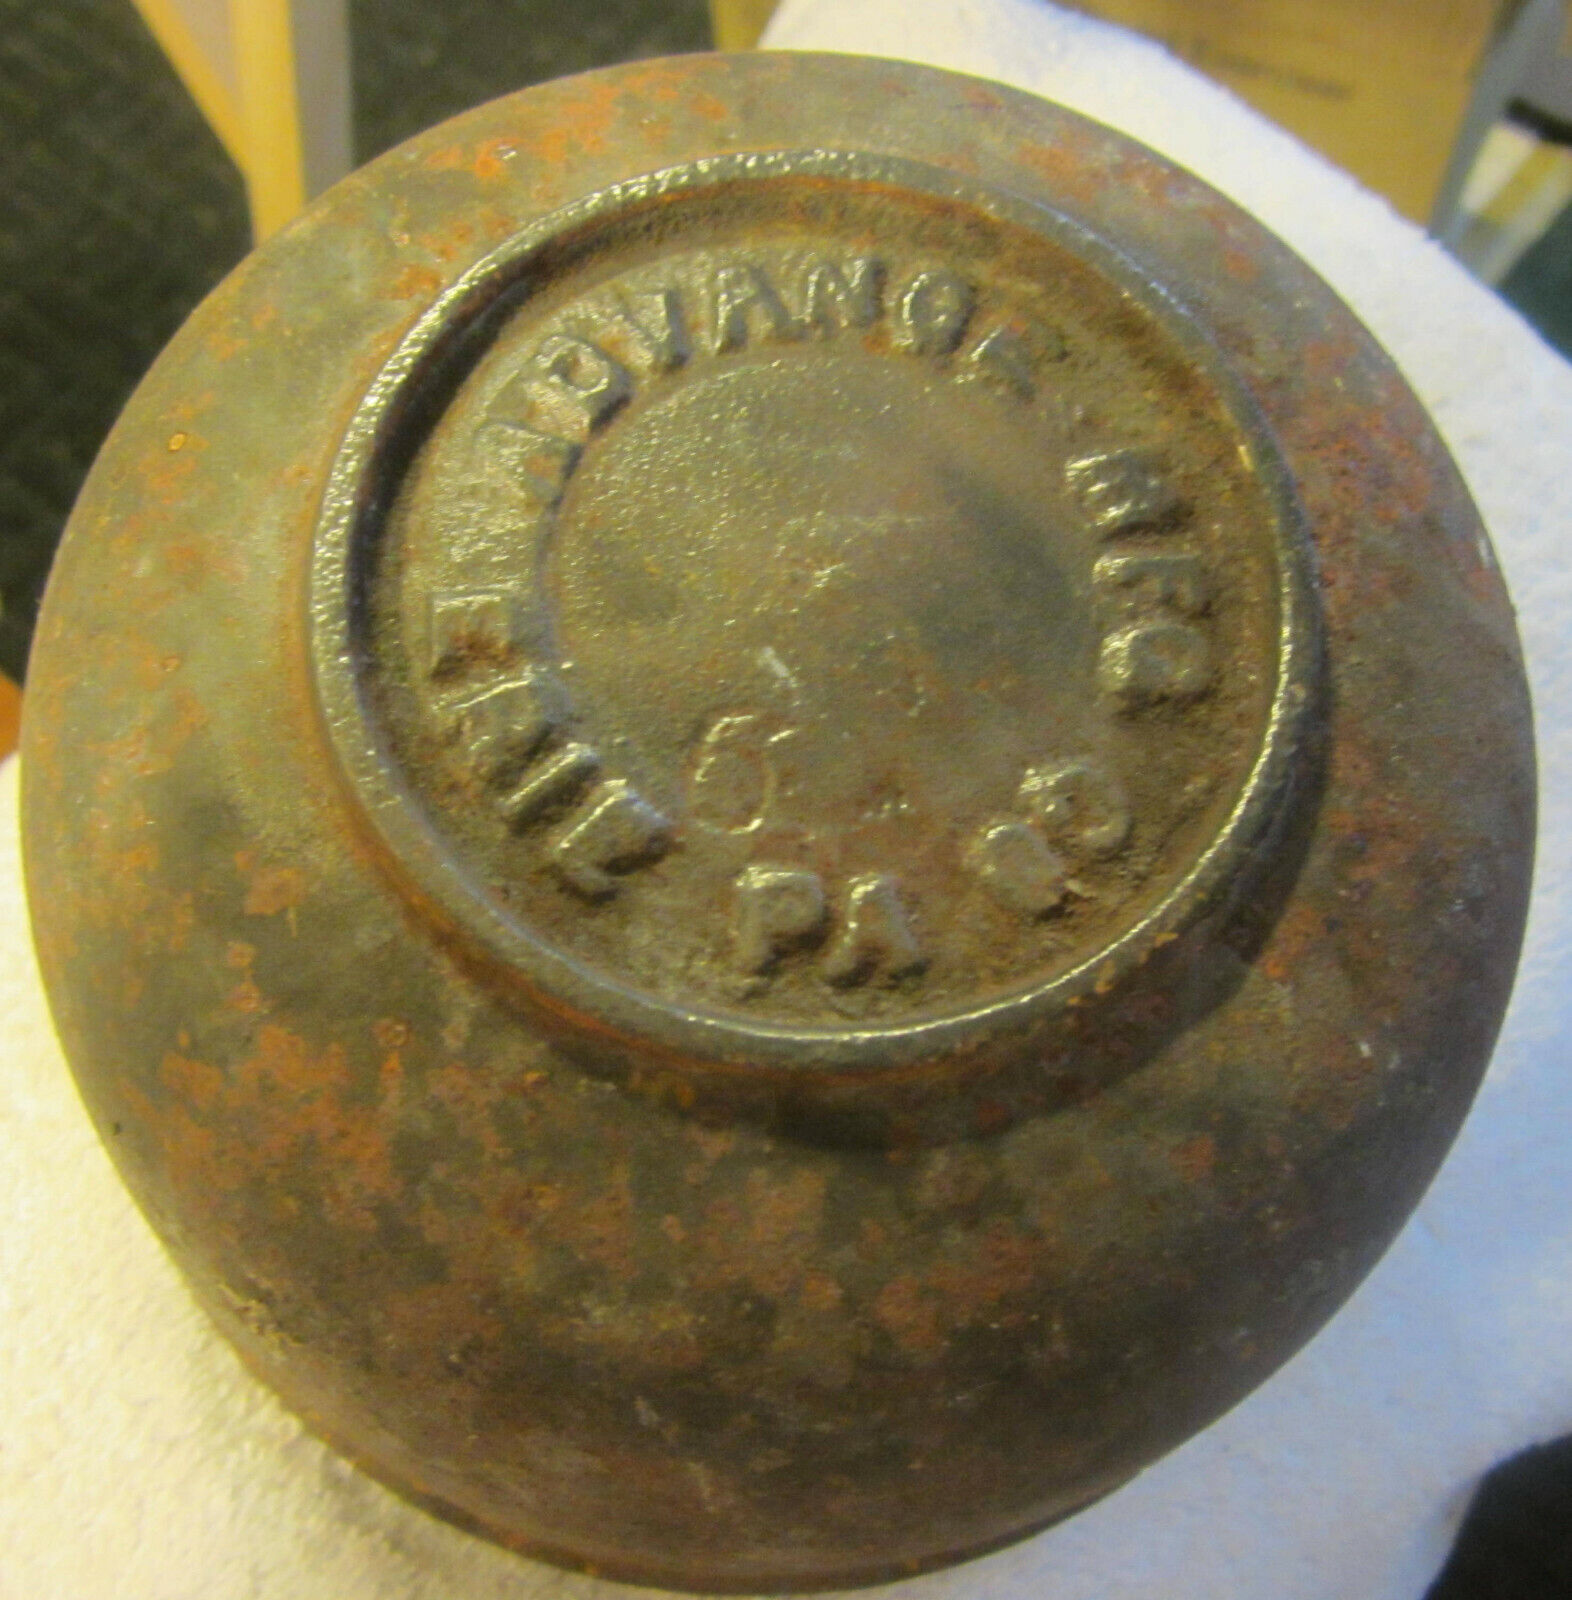 6 # Antique Advance Mfg Erie PA Cast Iron Bail Pot VTG,kettle